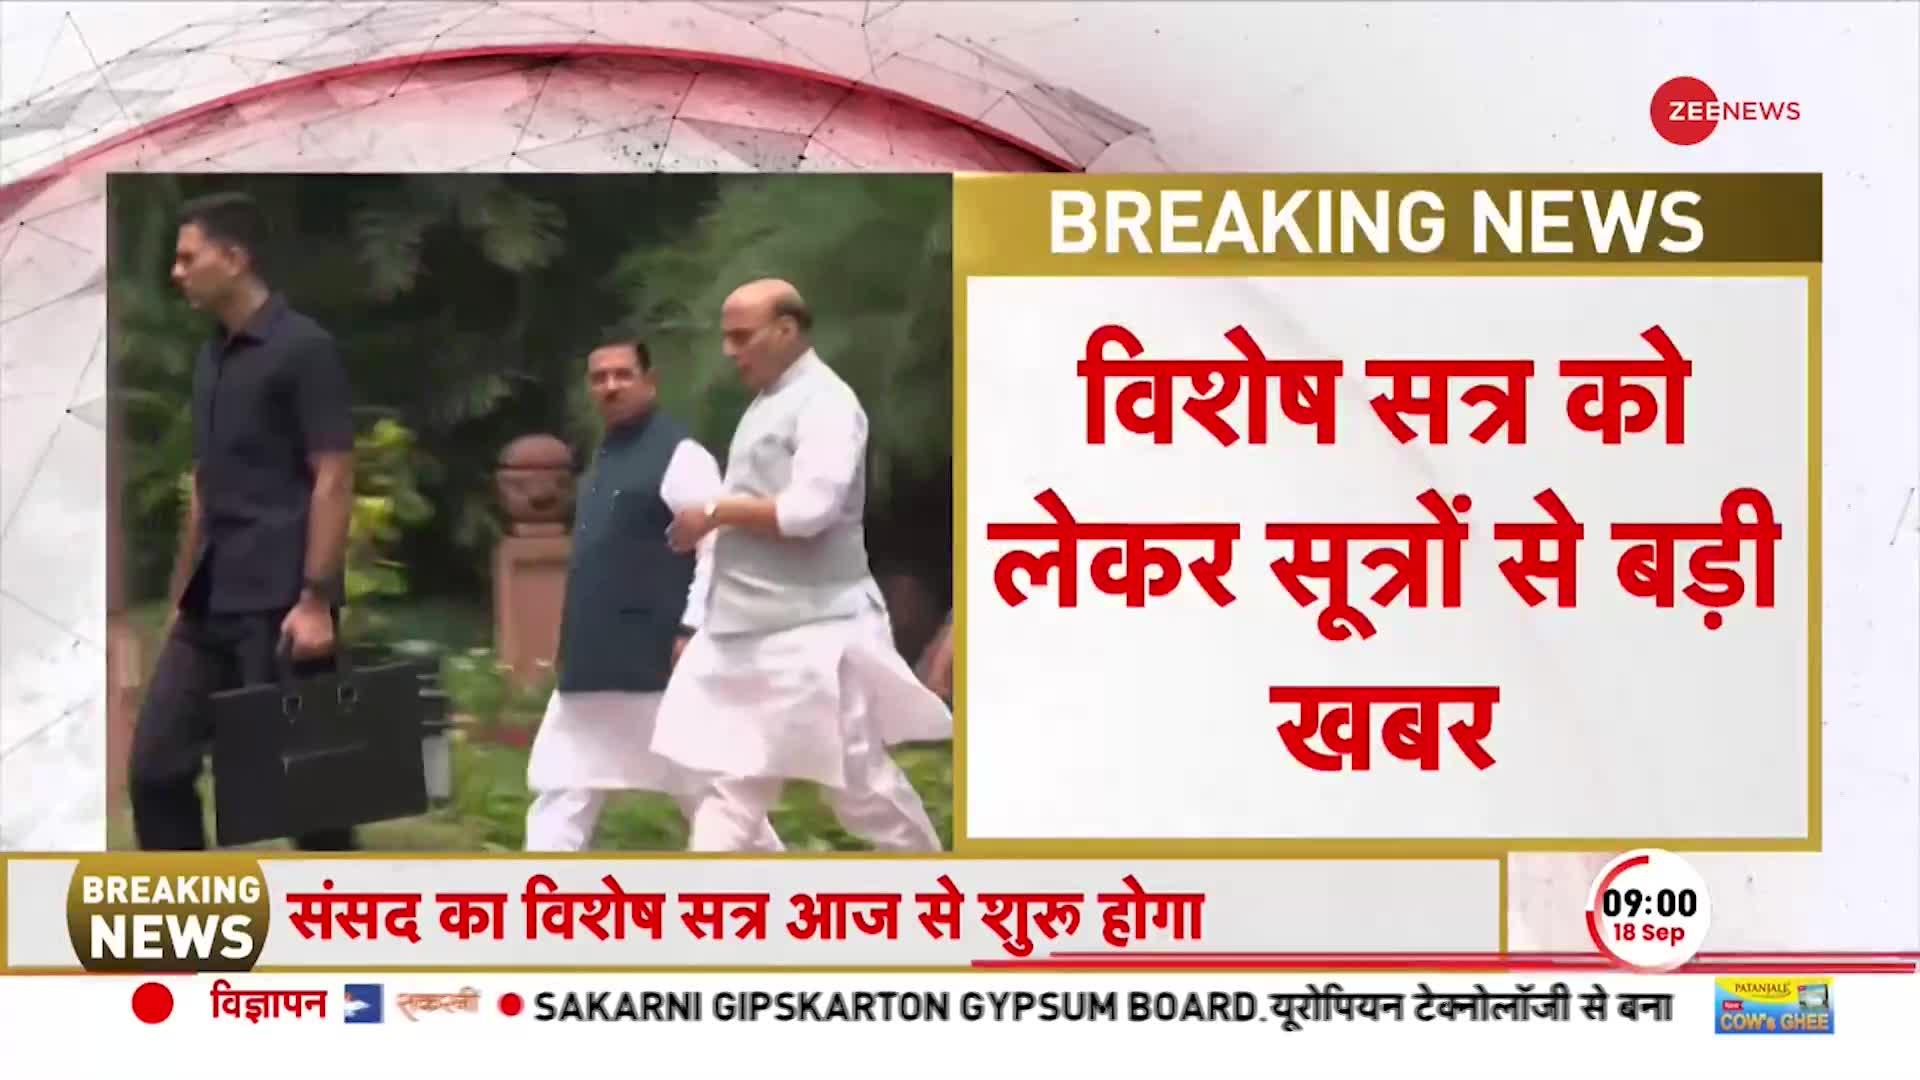 PM Modi Breaking News: संसद का विशेष सत्र शुरू, PM मोदी का आखिरी भाषण है